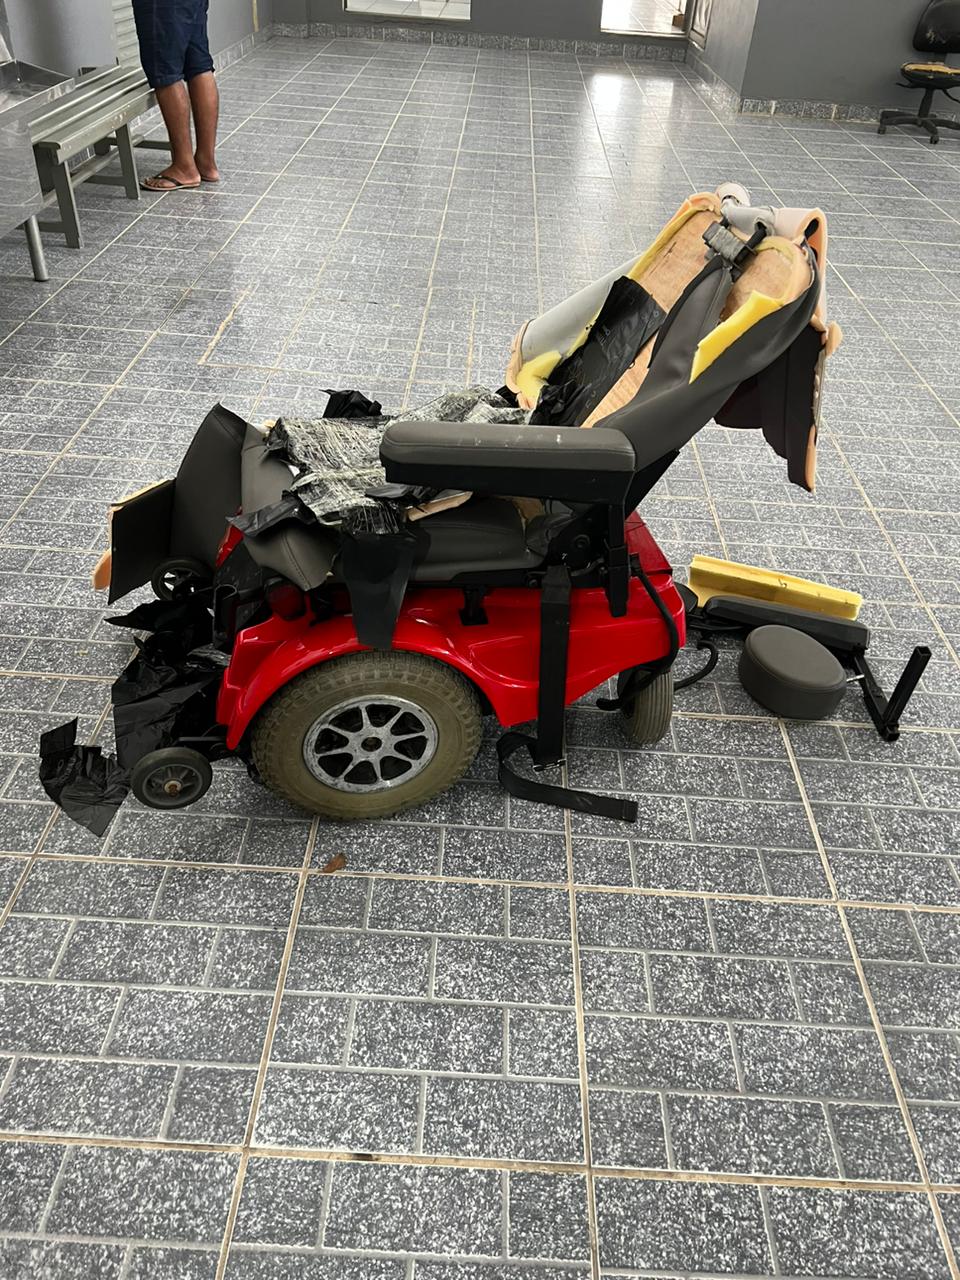 Droga estava escondida em cadeira de rodas no aeroporto - Foto: Divulgação/PF-AM